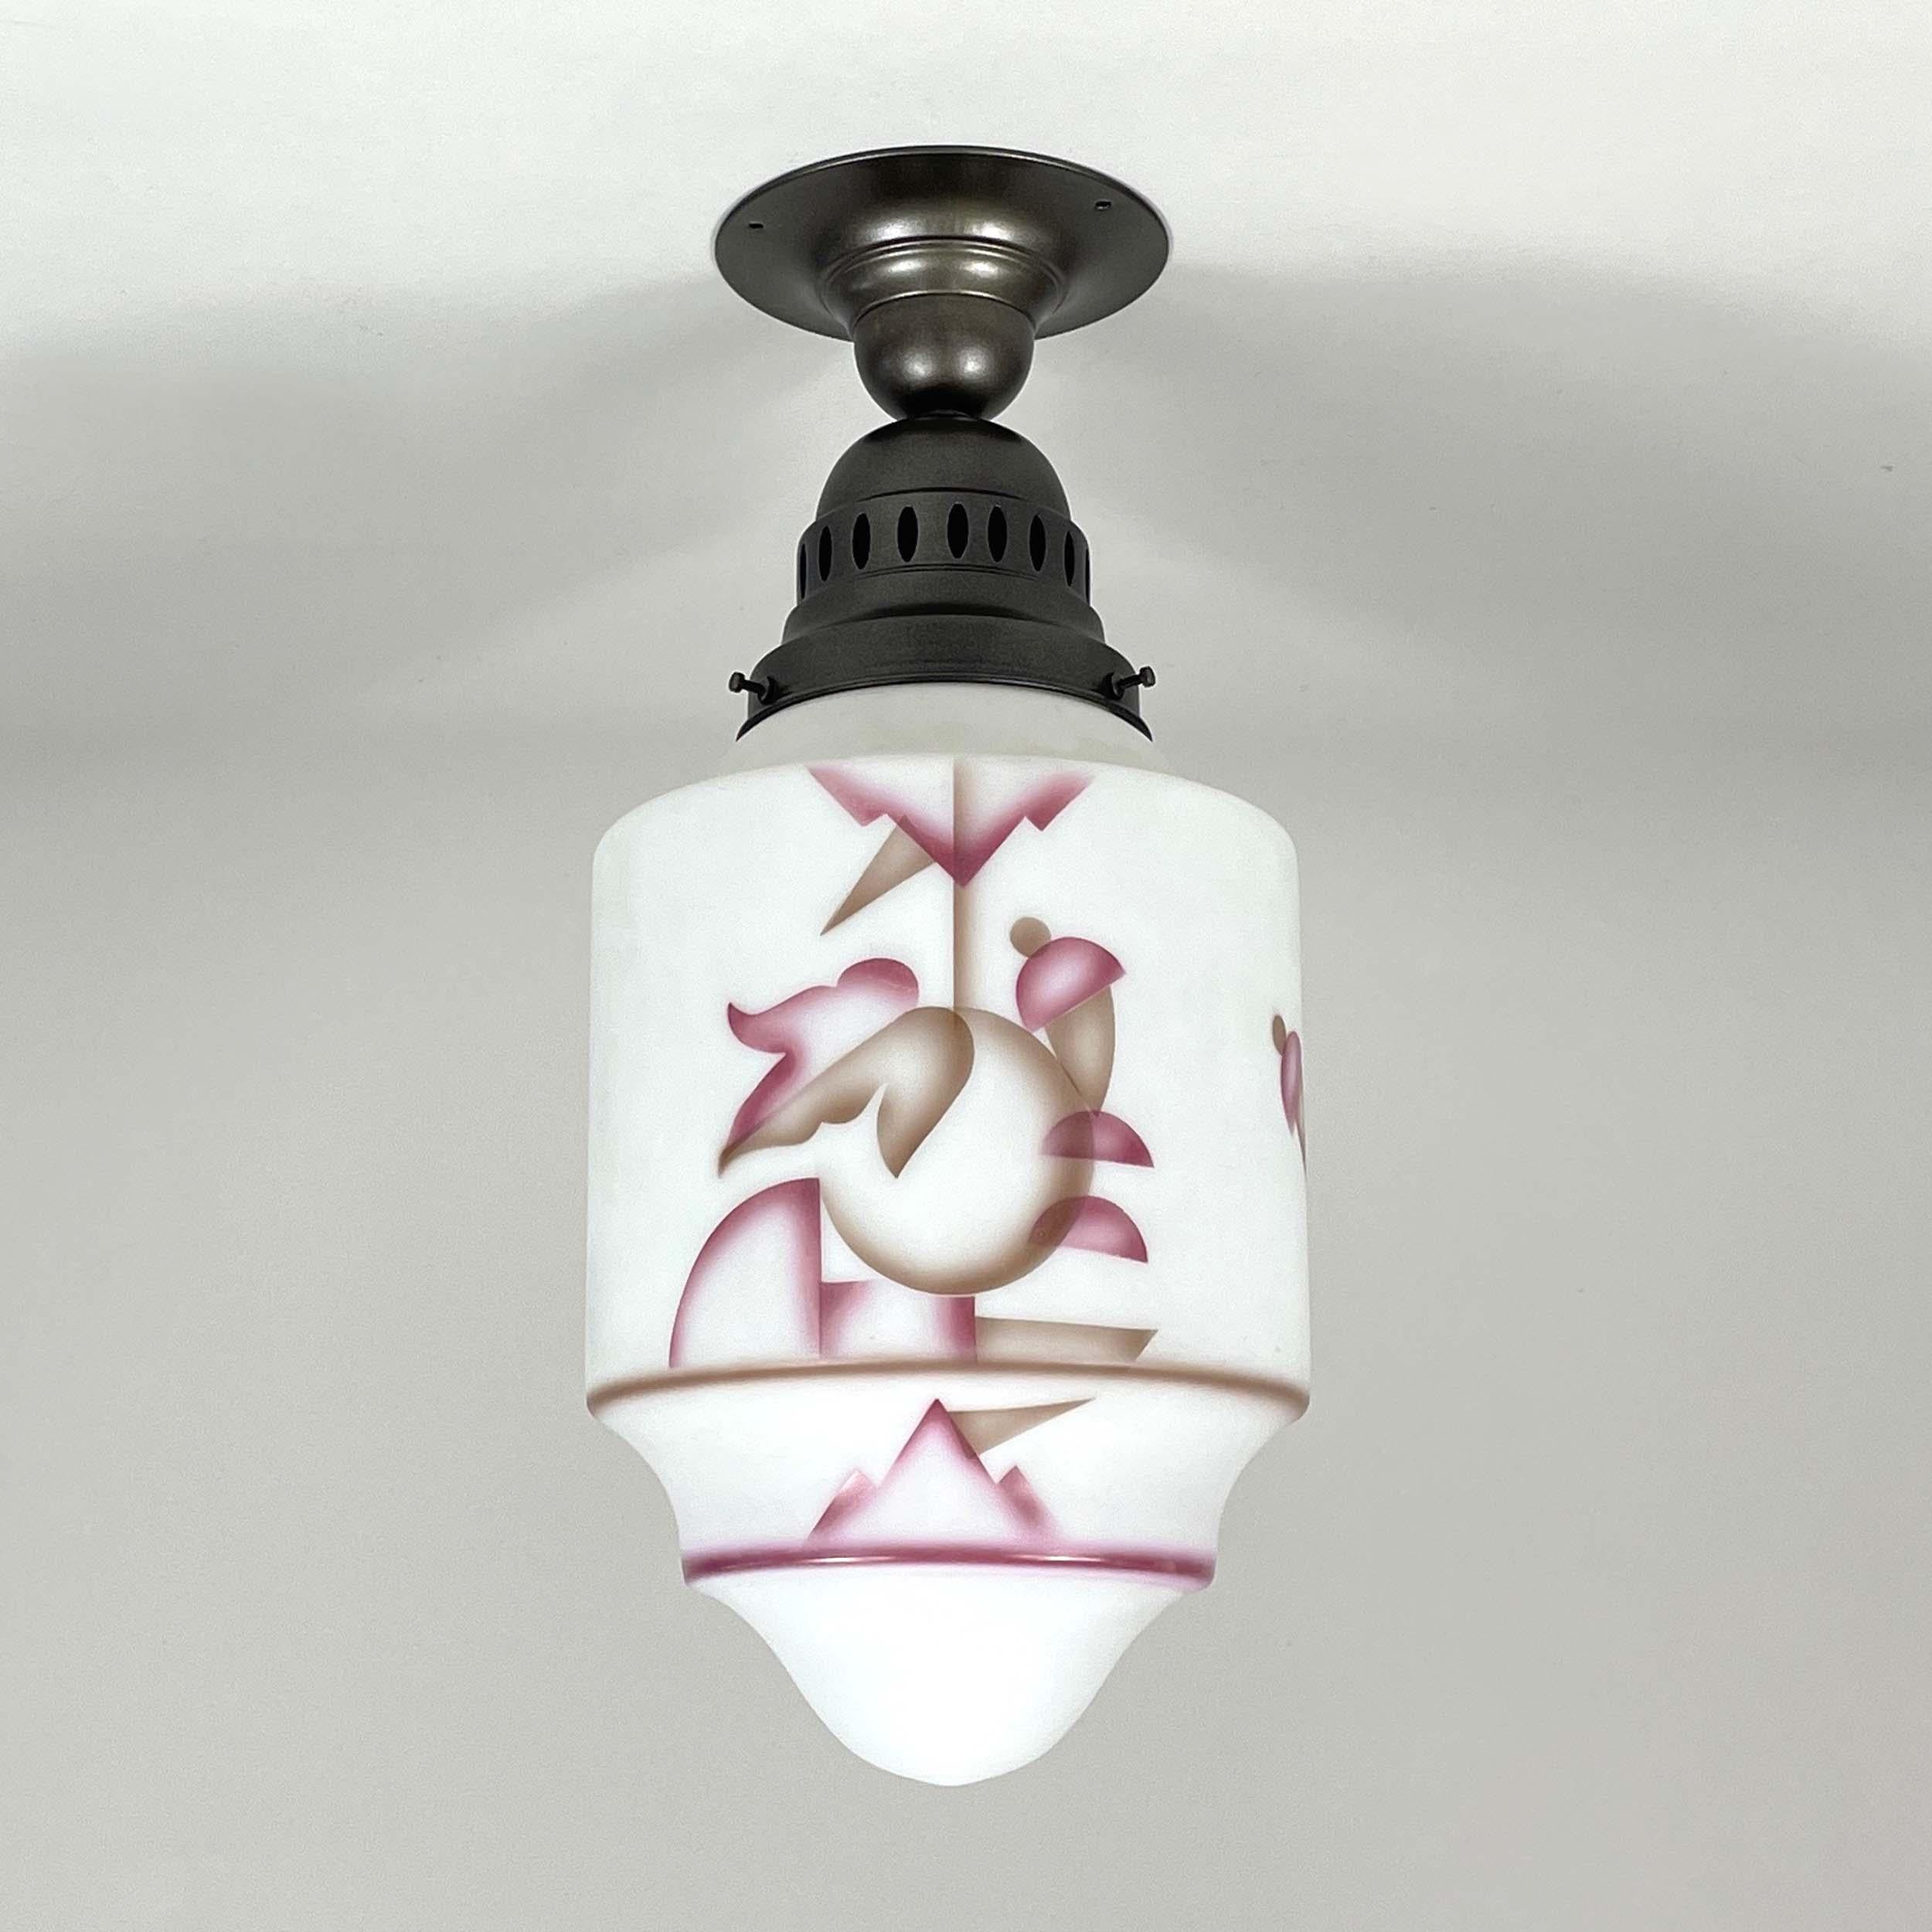 Diese elegante Unterputzleuchte wurde in den 1930er Jahren in Deutschland zur Zeit des Bauhauses entworfen und hergestellt. Sie verfügt über einen Lampenschirm aus weißem Milchglas mit rosafarbenem und hellbraunem Pinseldekor und